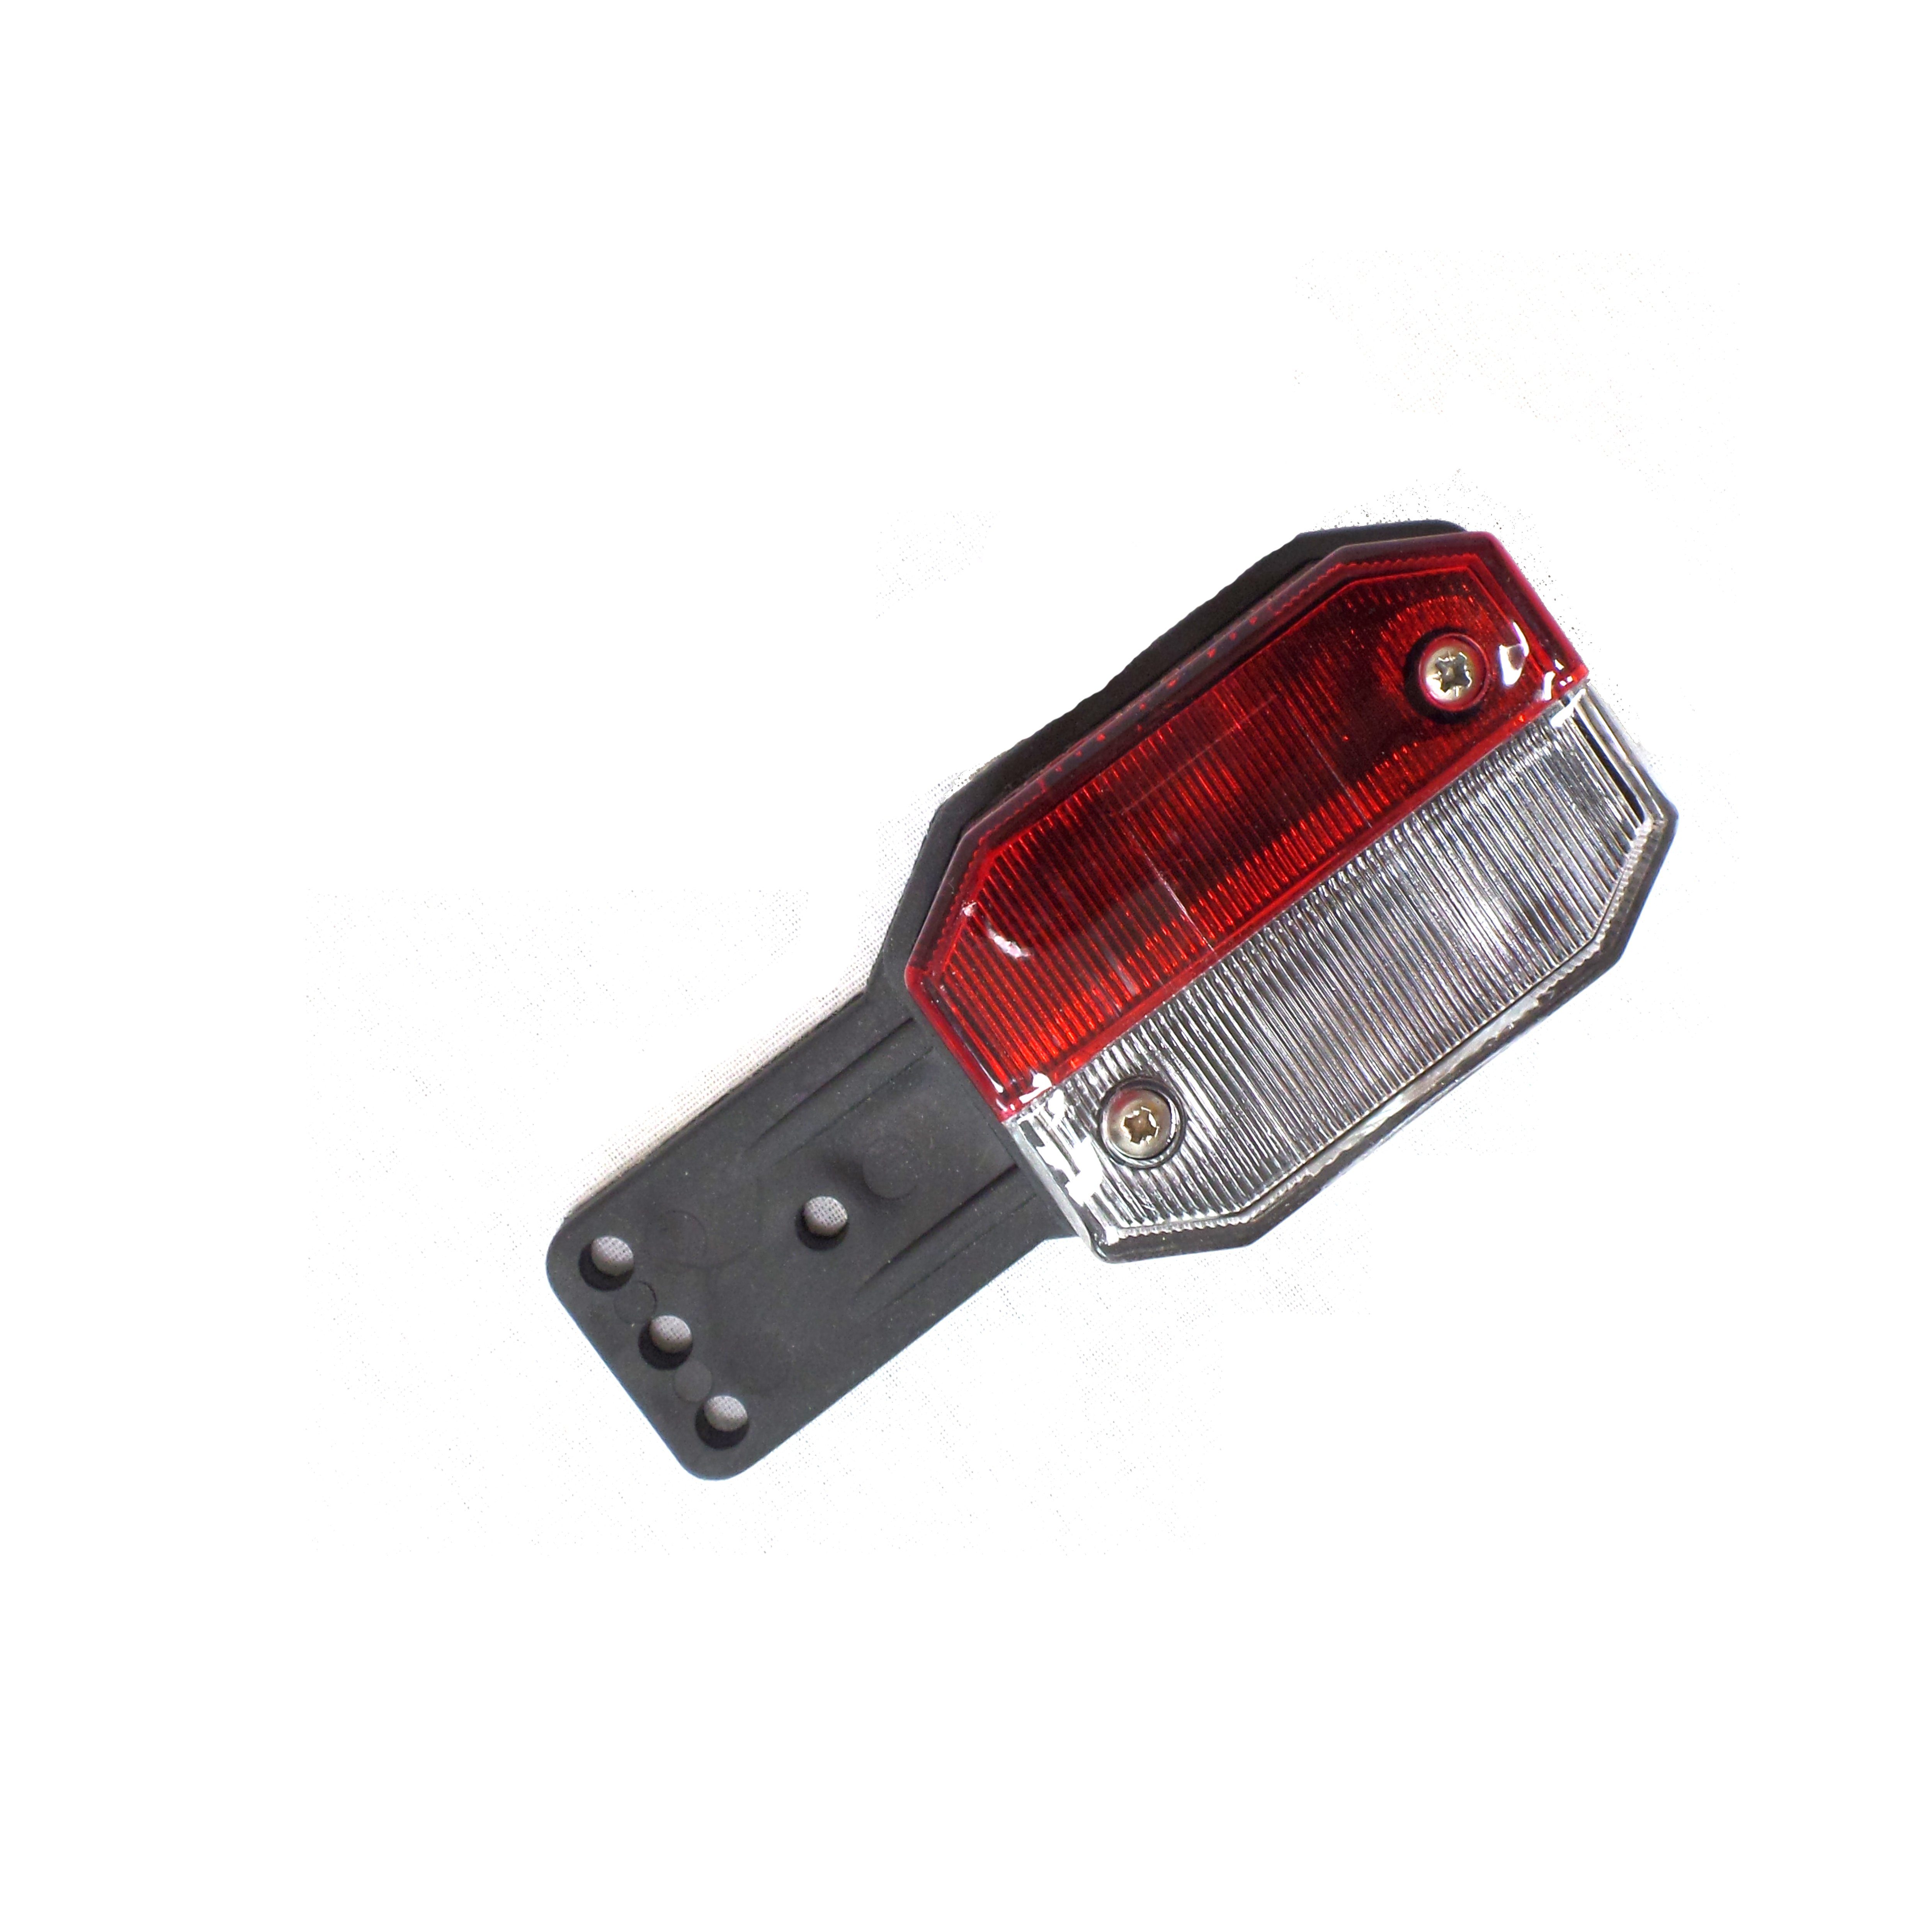 Aspöck Anhänger-Rückleuchte weiß Leuchtmittel, Flexipoint Positionsleuchte 2x / - rot rot/weiß, ohne Umrissleuchte